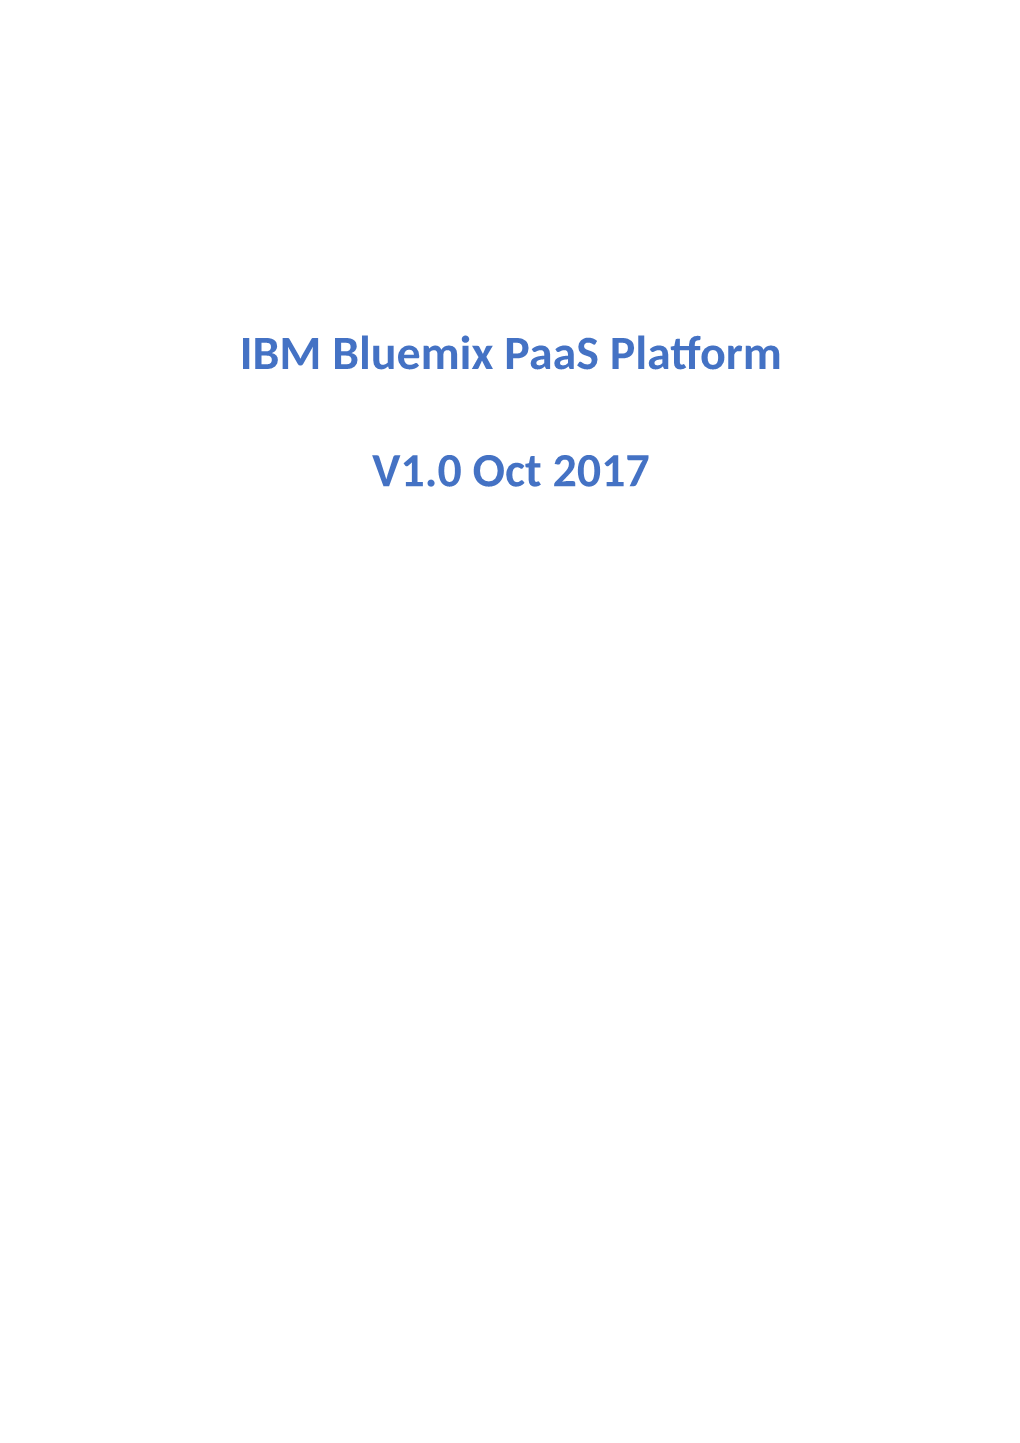 IBM Bluemix Paas Platform V1.0 Oct 2017